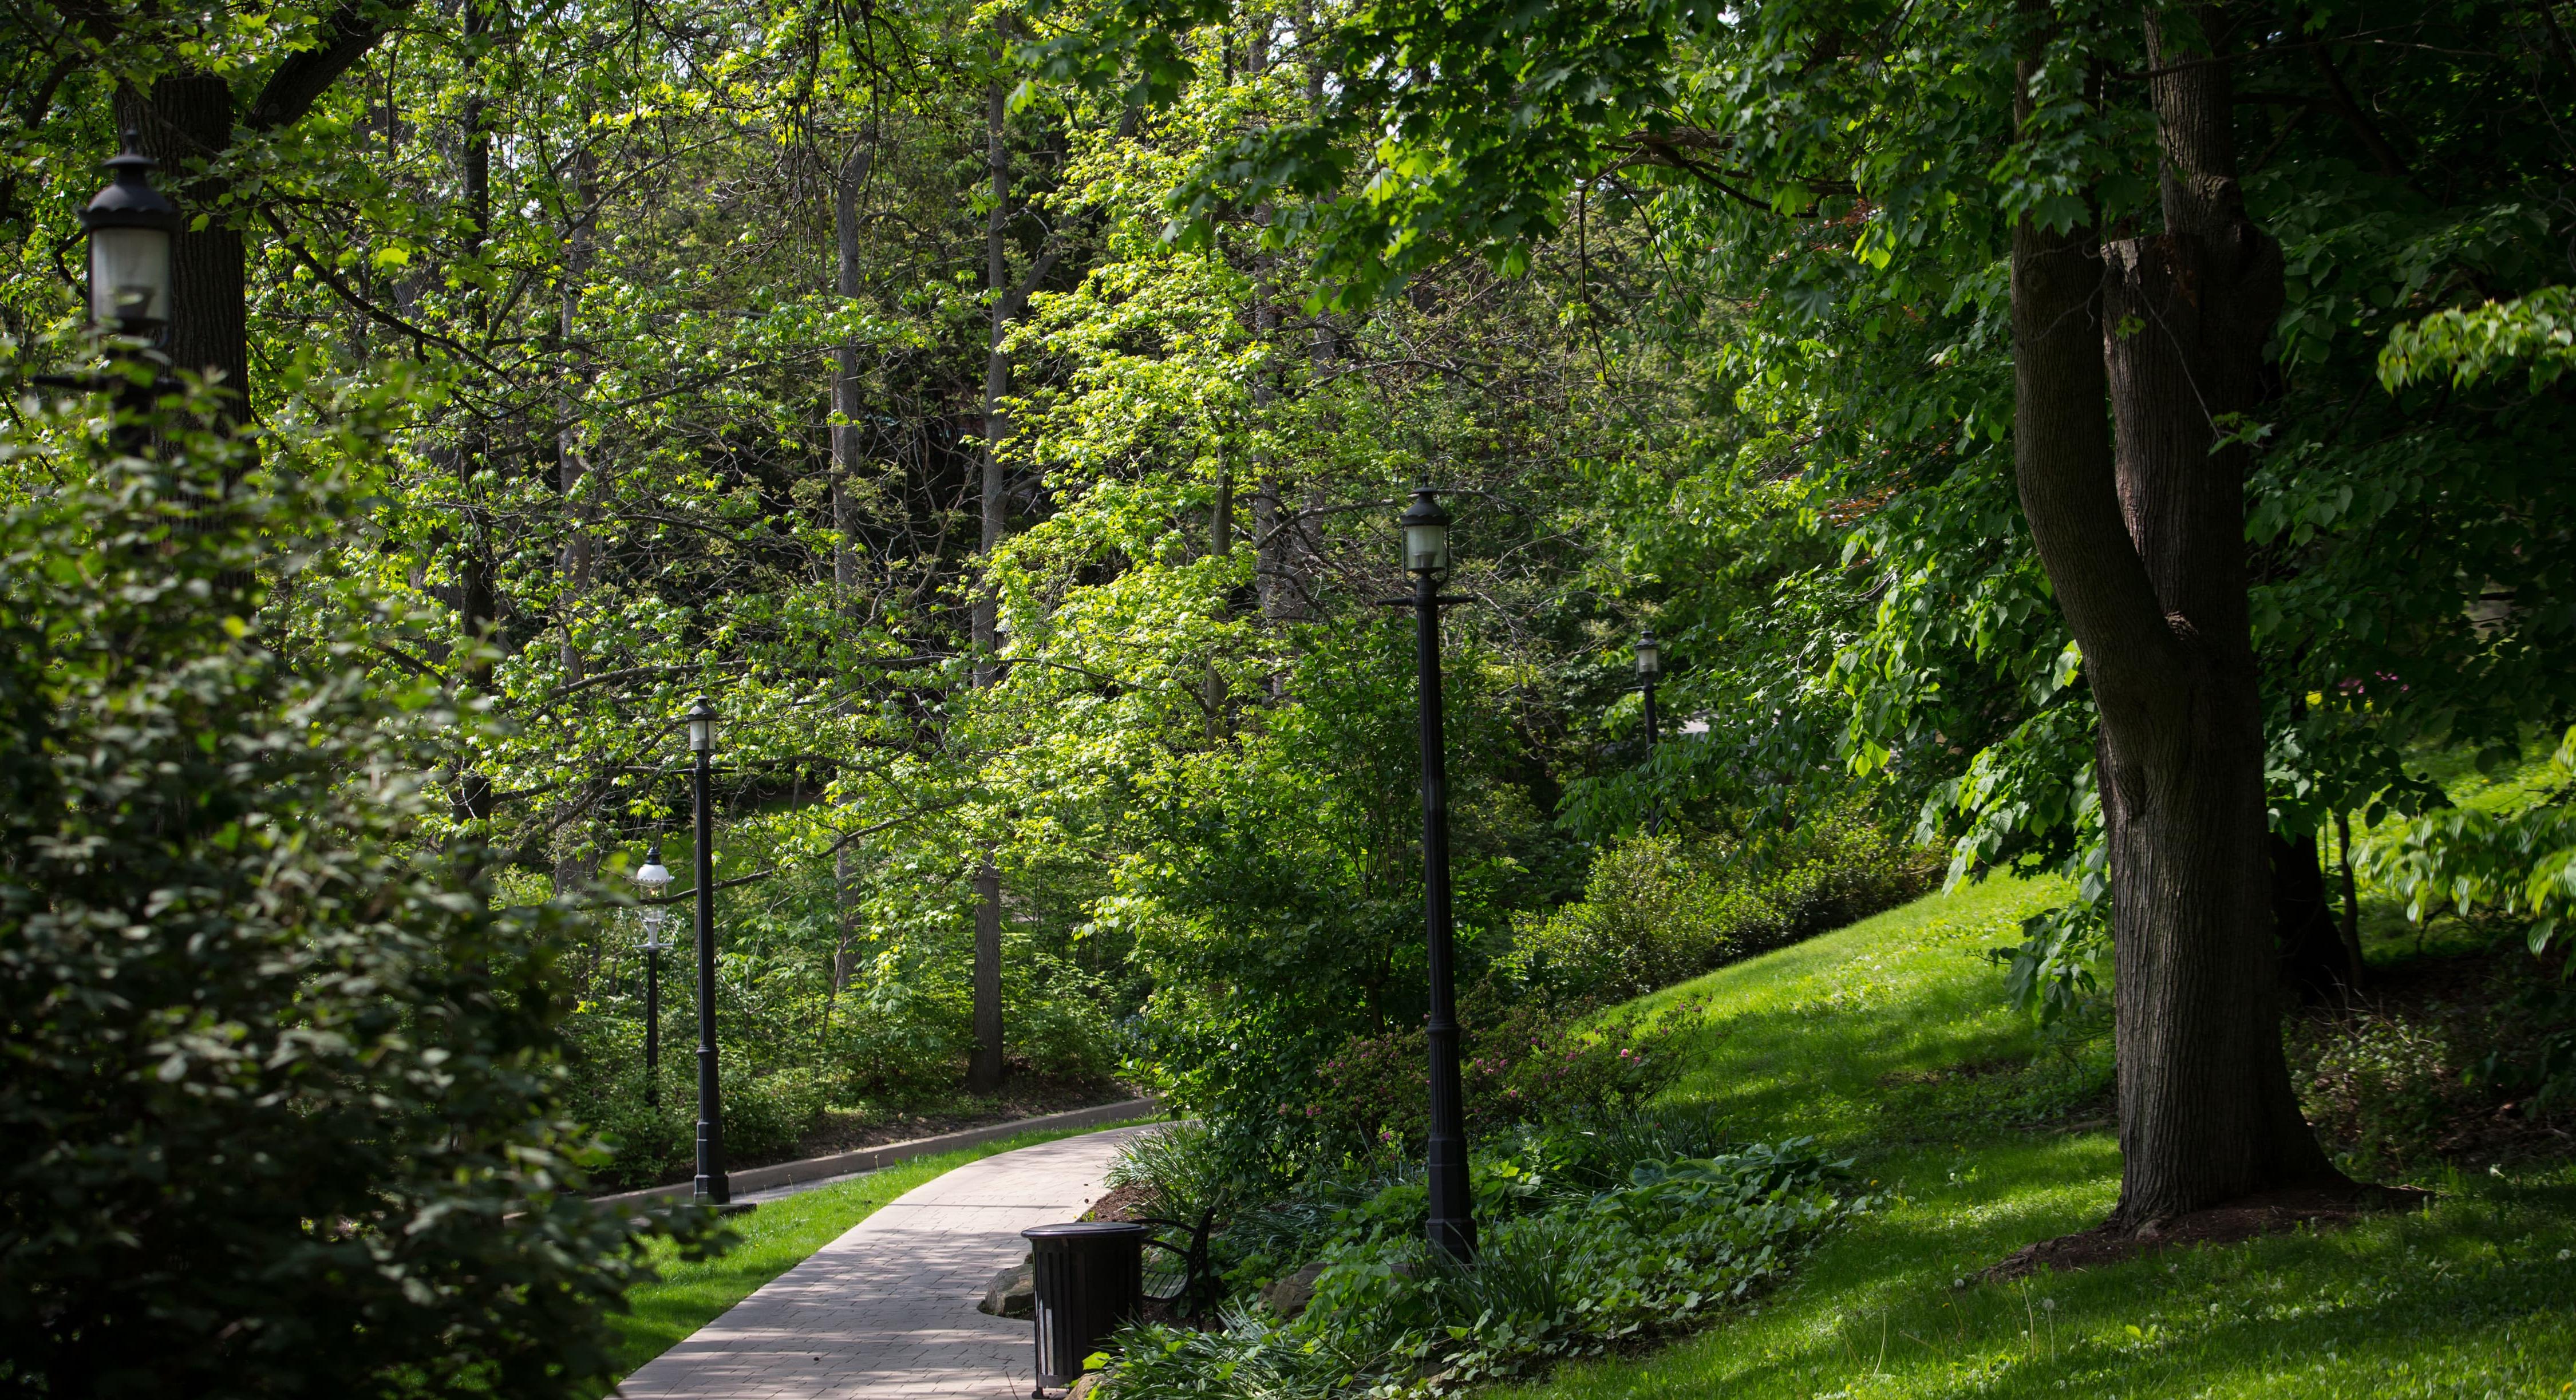 图为波胆网站荫边校区的人行道蜿蜒穿过茂密的绿色森林. 